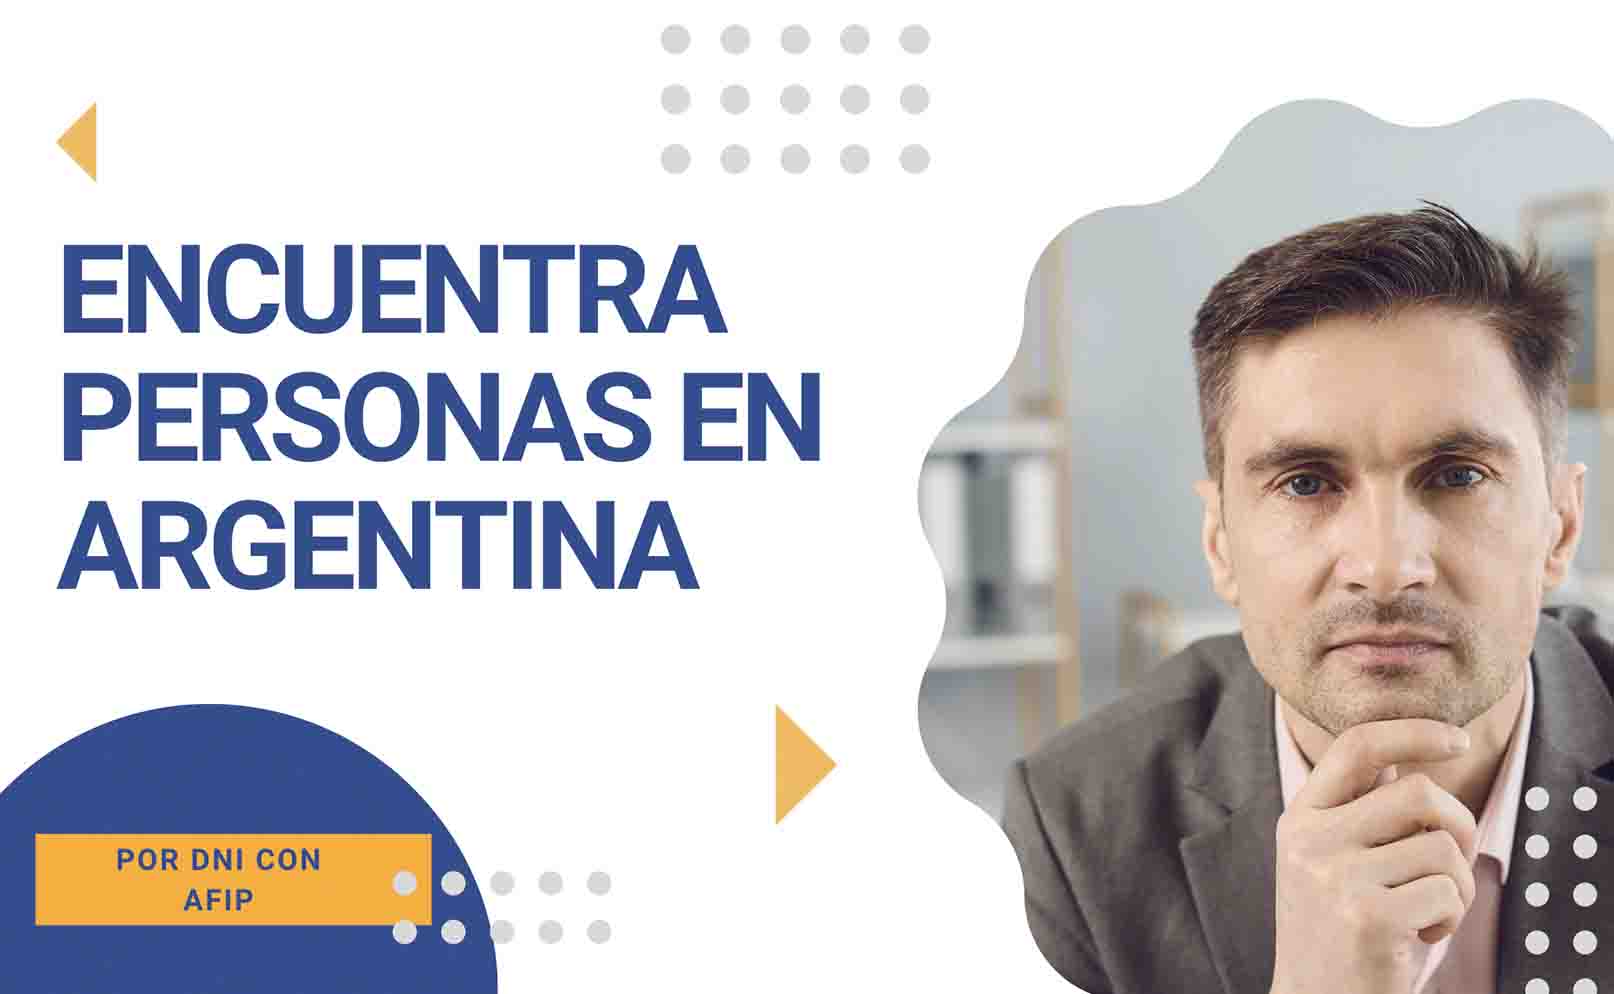 Encuentra personas en Argentina por DNI con AFIP